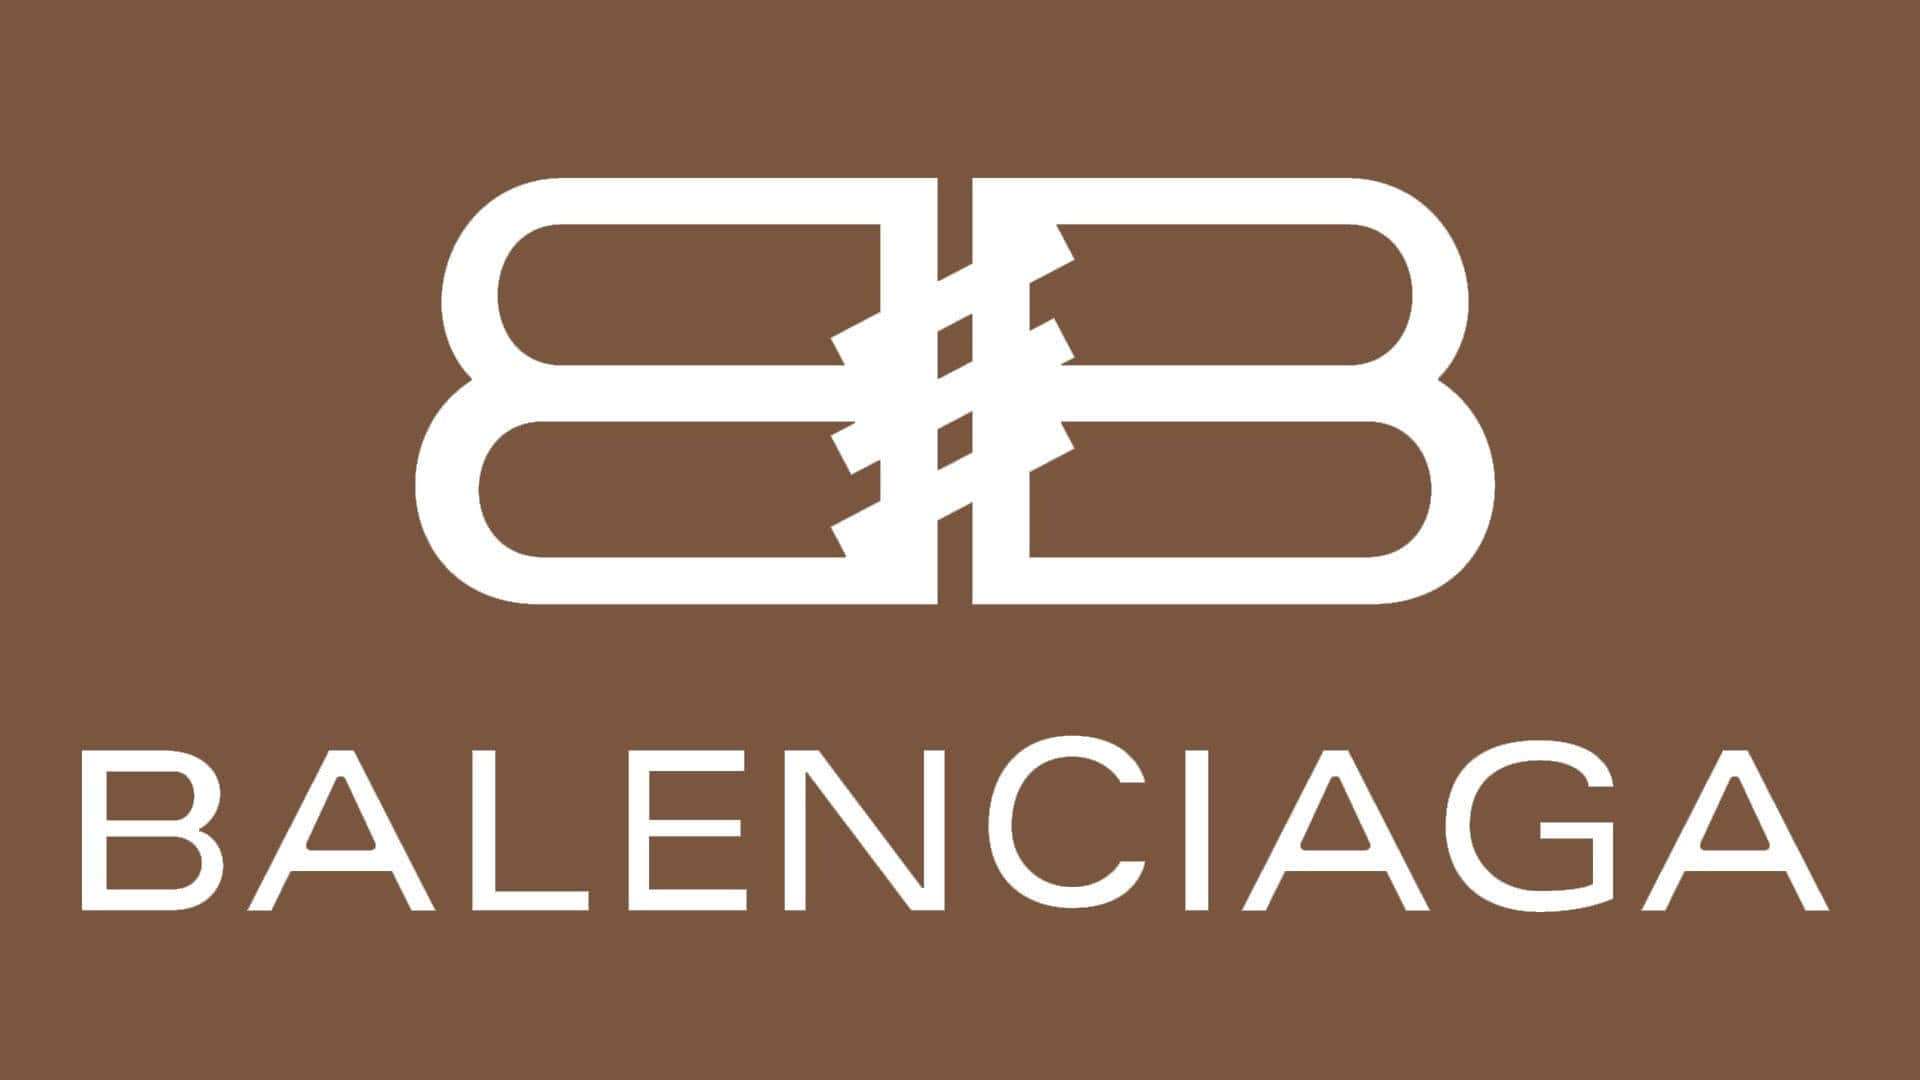 Step into style with Balenciaga